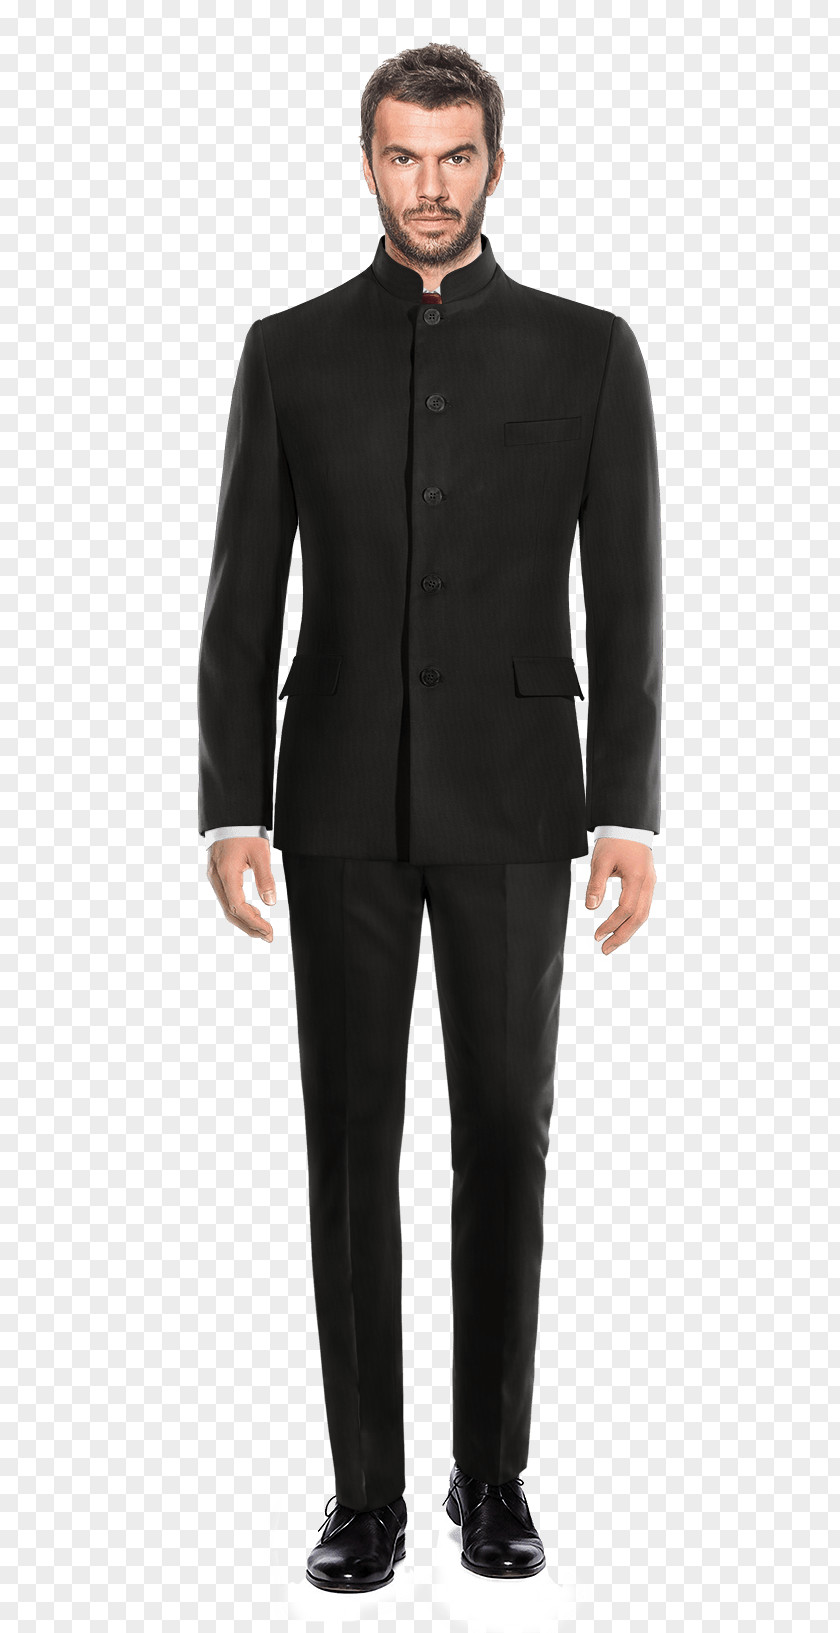 Suit Tuxedo Jacket Lapel Formal Wear PNG